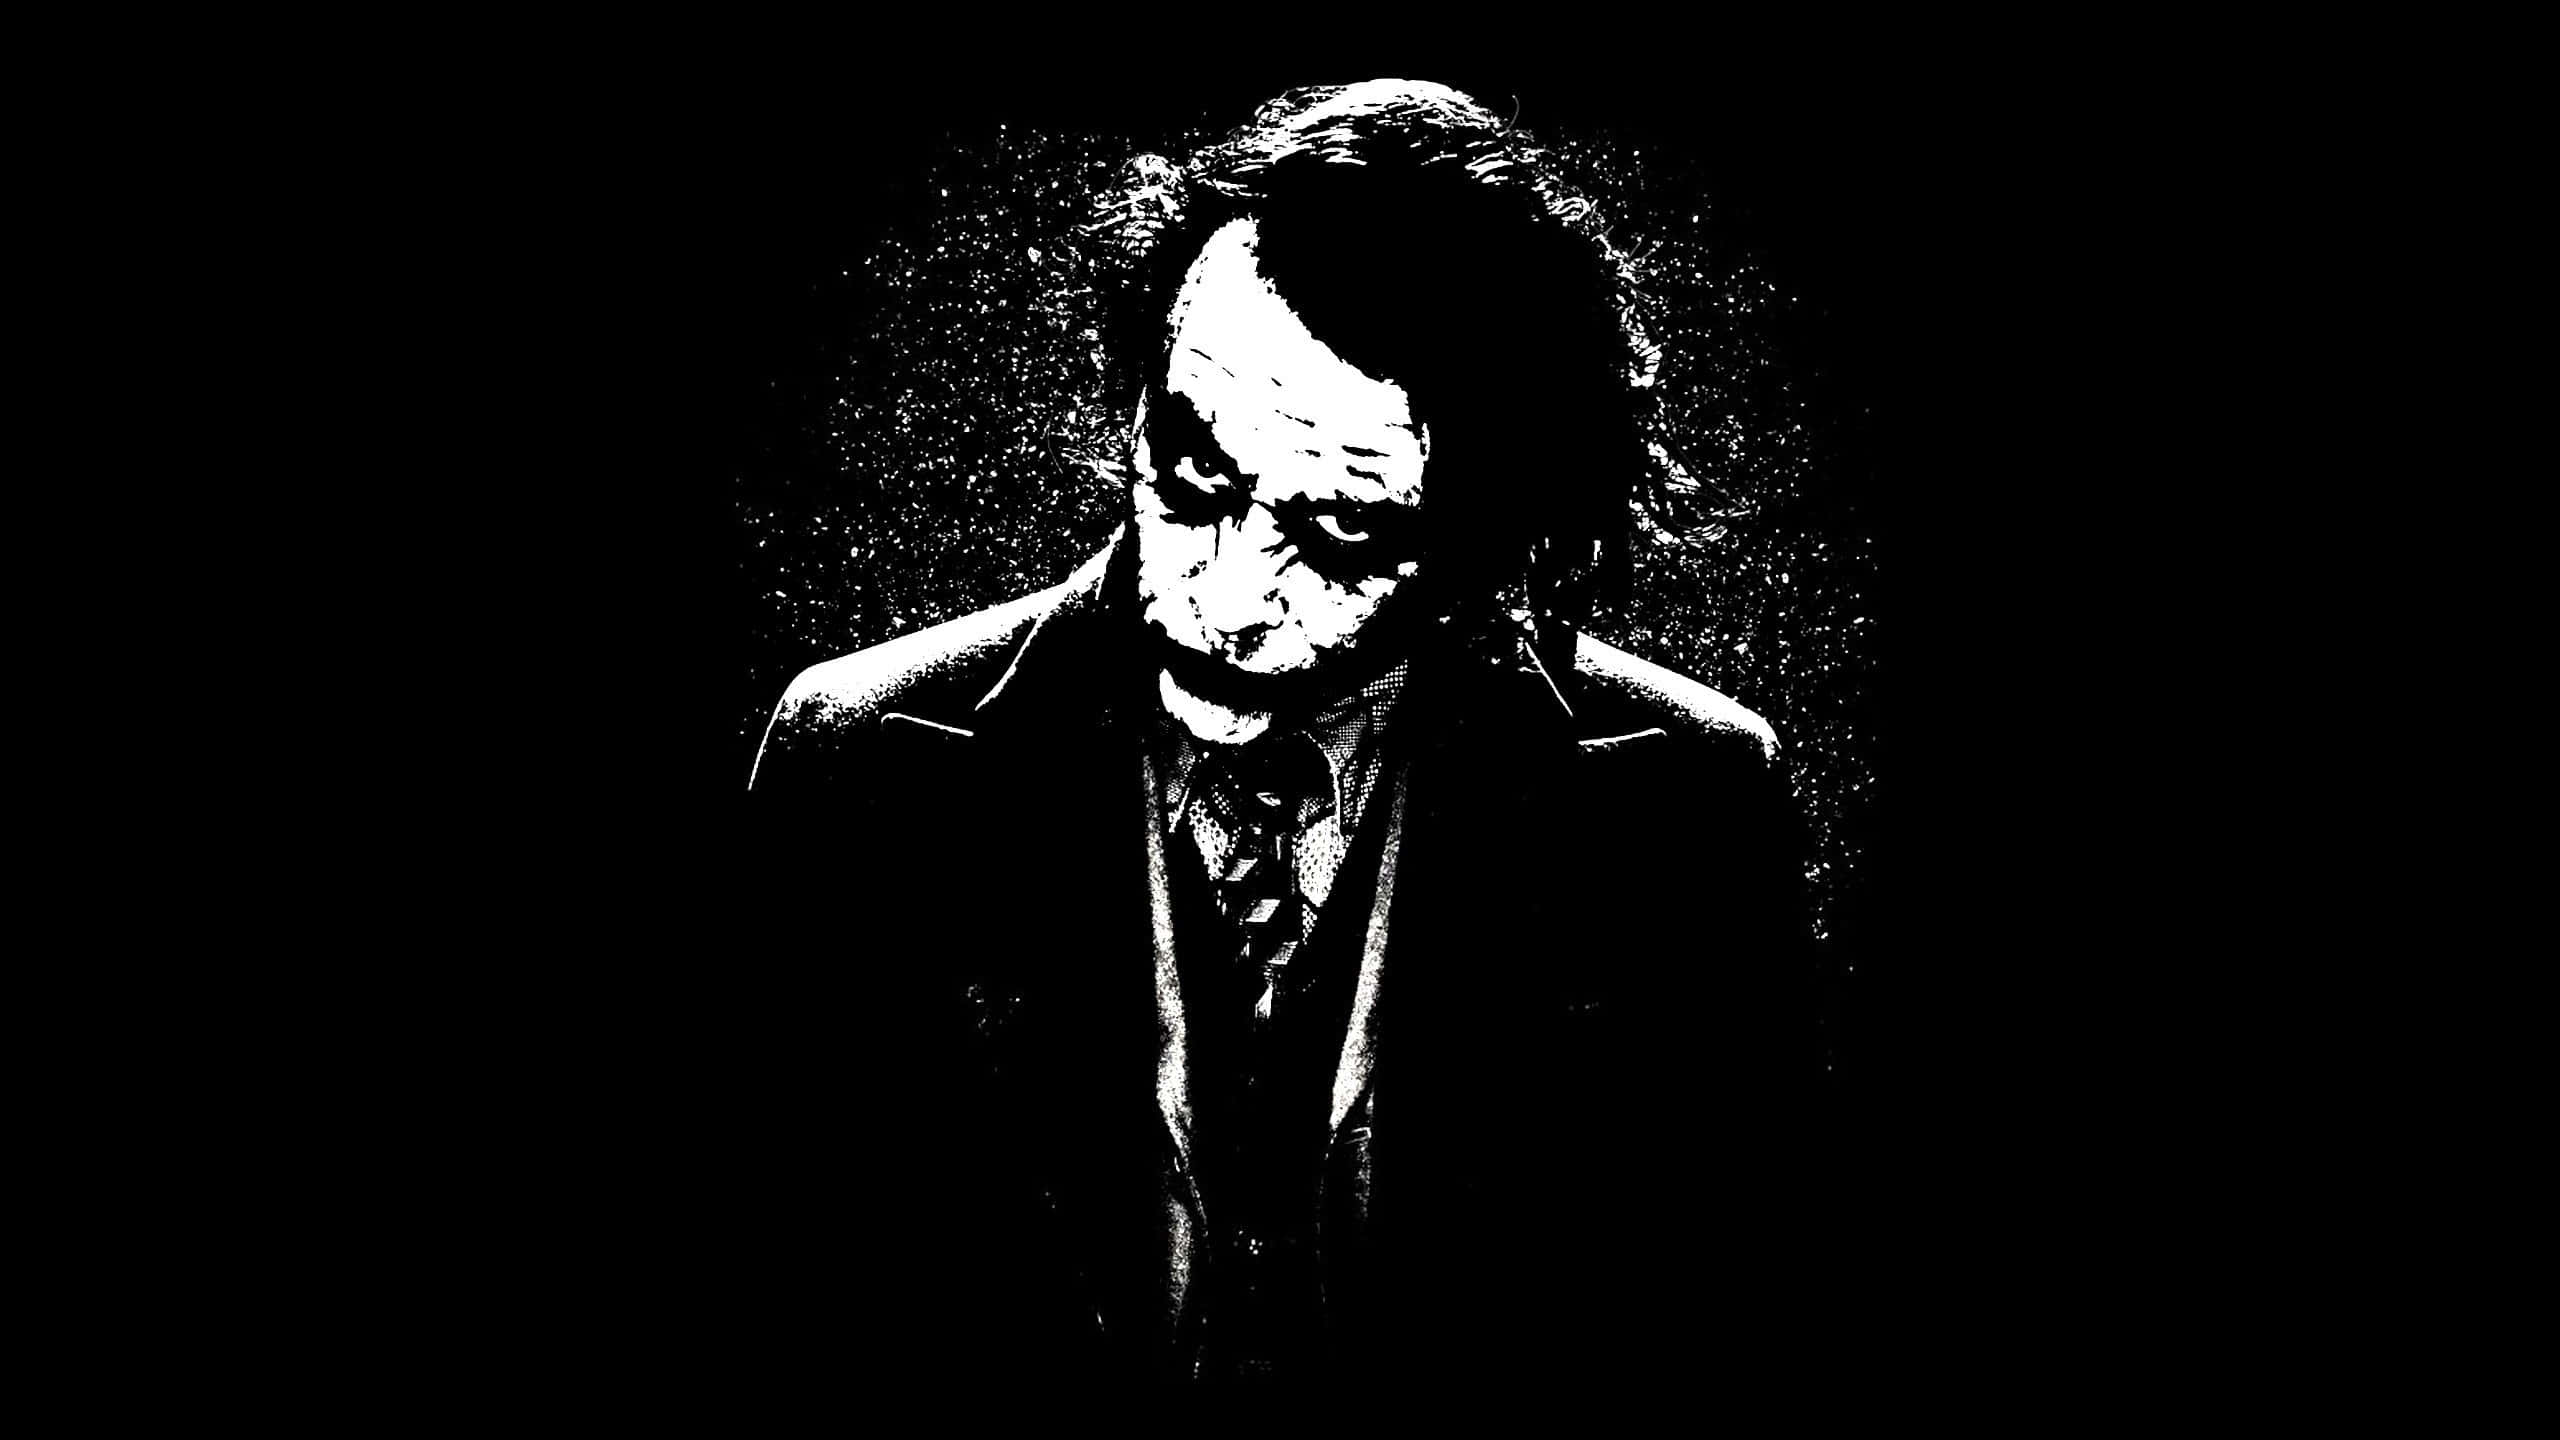 Download Dark Joker 2560 X 1440 Wallpaper Wallpaper | Wallpapers.com